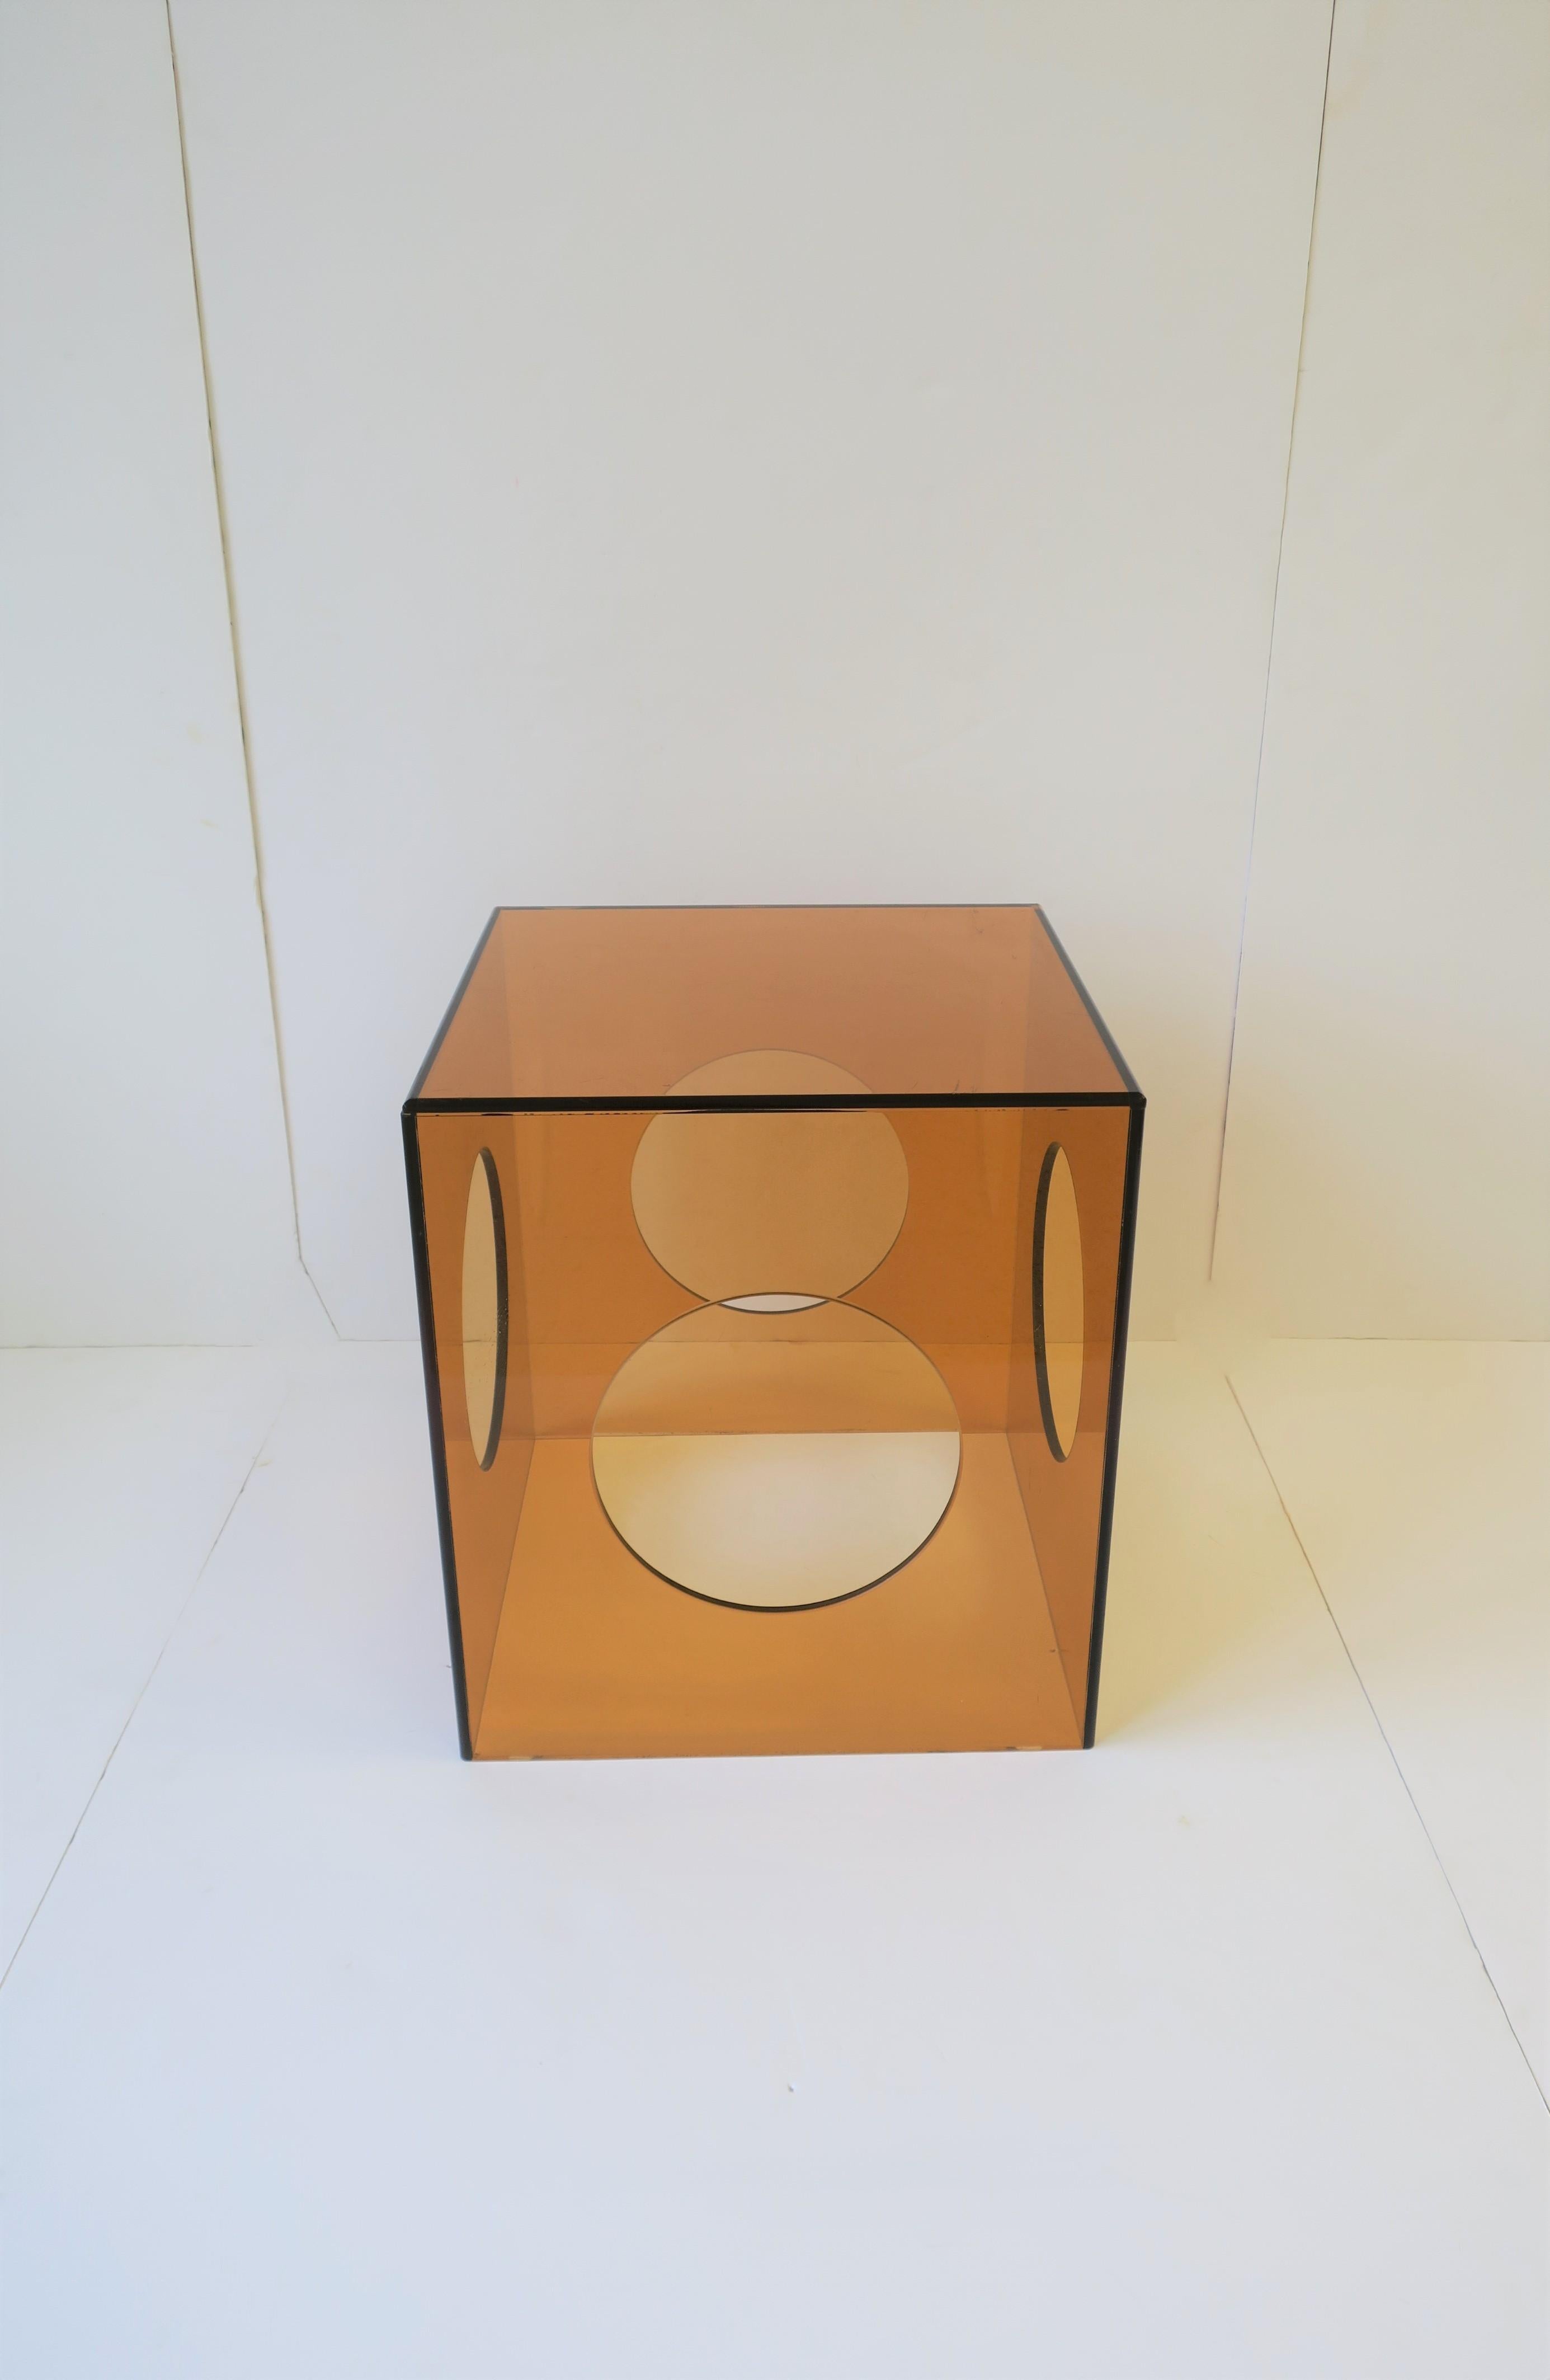 Ein großartiger, bernsteinfarbener/orangefarbener, quadratischer Beistell- oder Beistelltisch aus Acryl mit runden, geometrischen Aussparungen im modernen Stil. 

Maße: 15